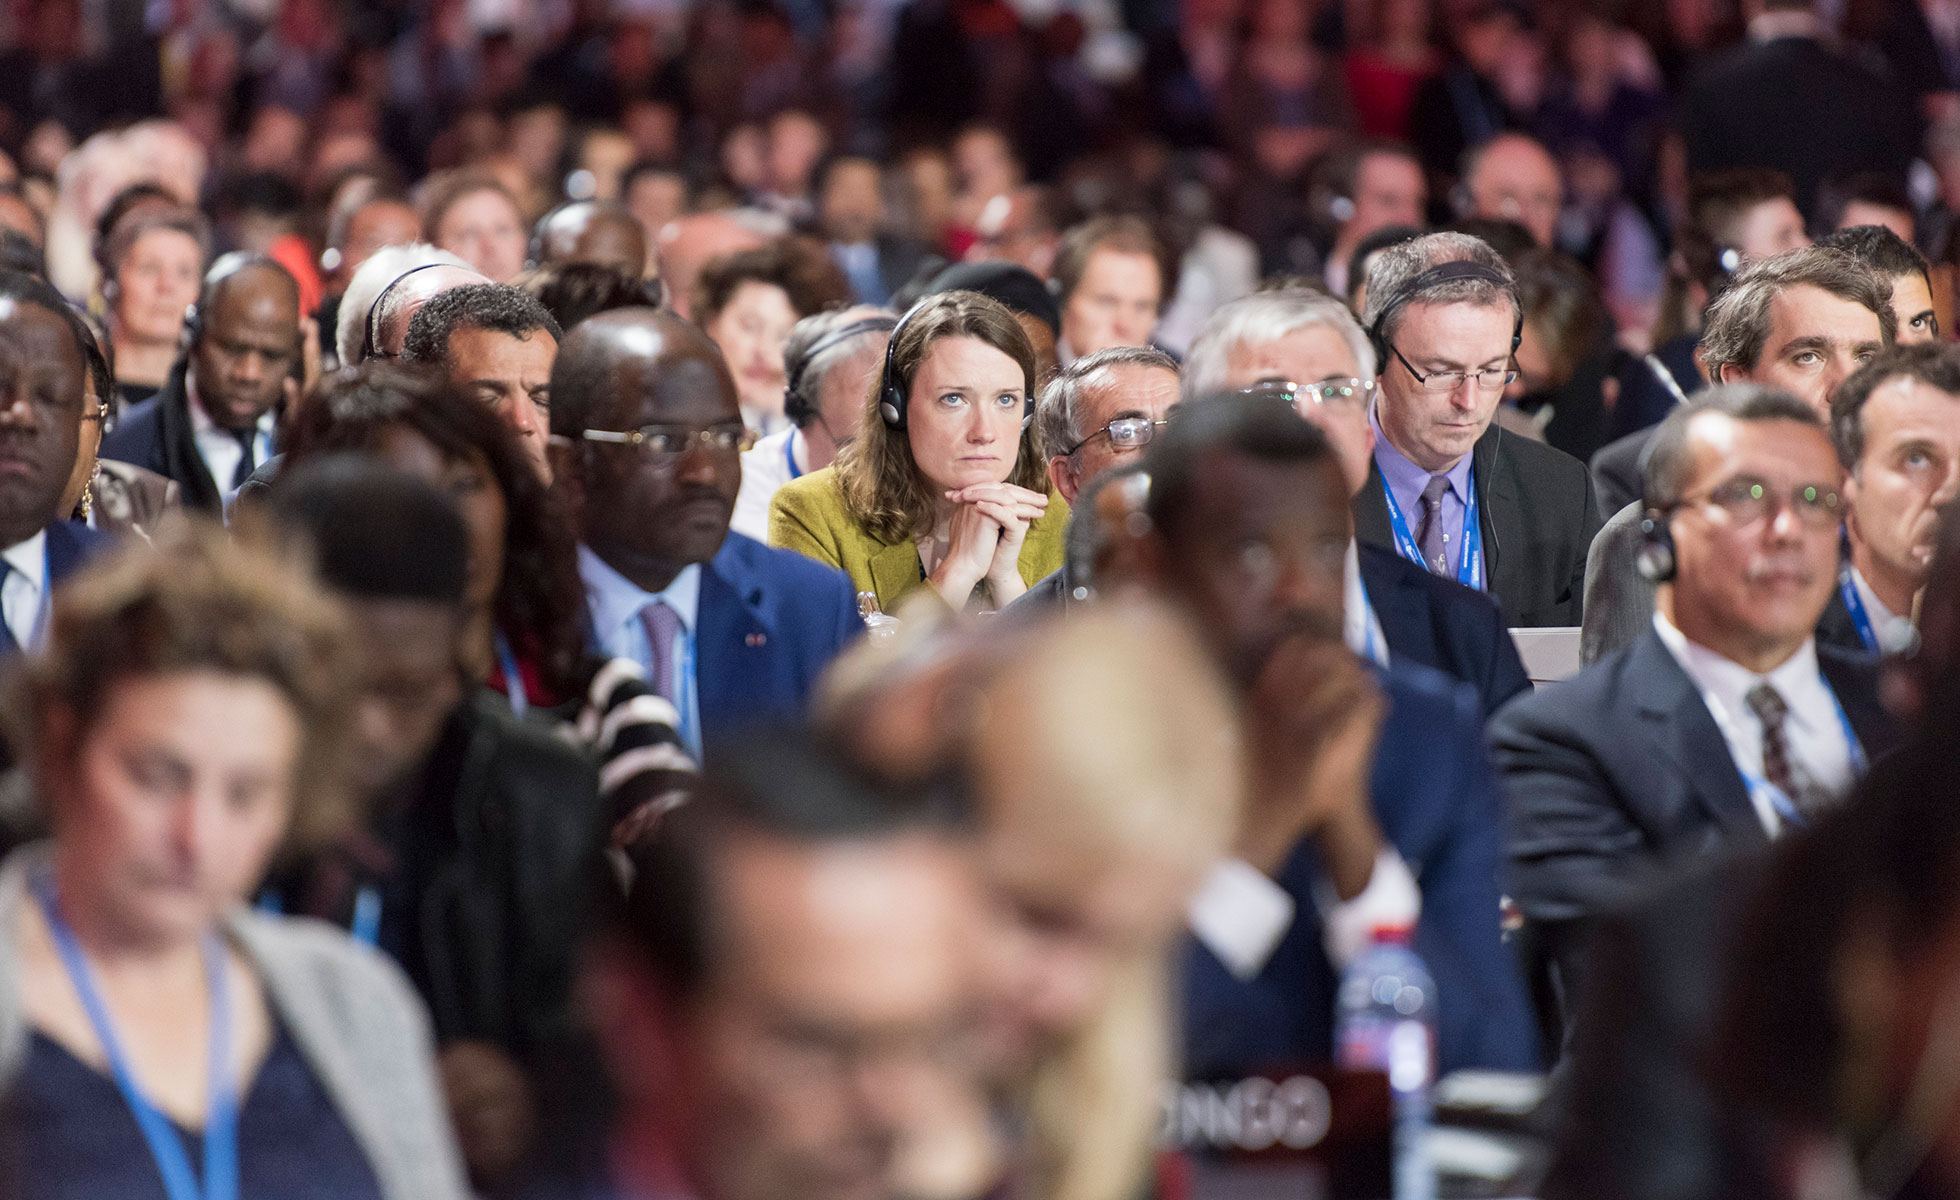 Participants at the UN Climate Change Conference in Paris (COP21).